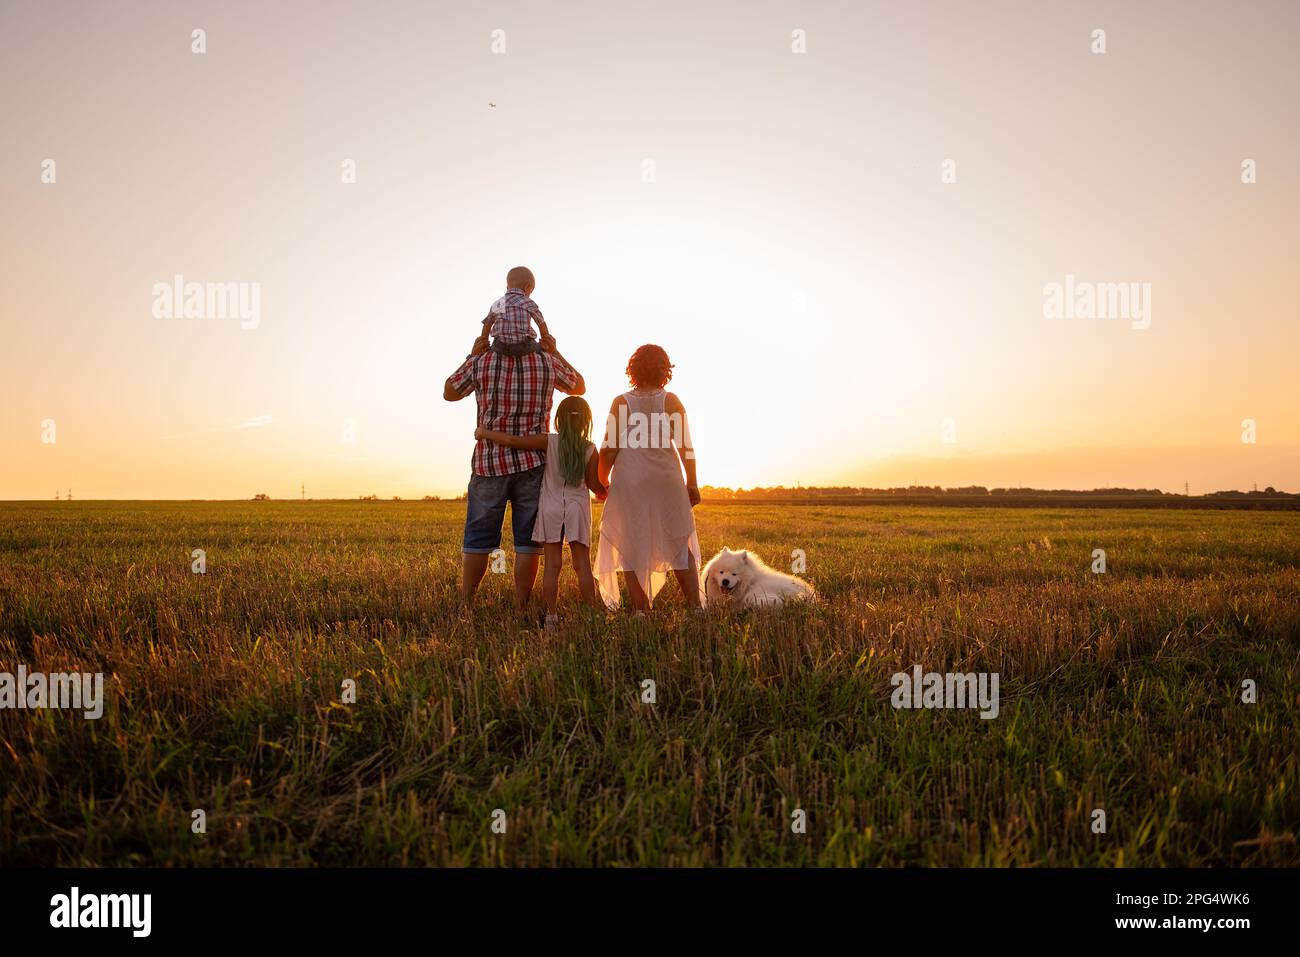 Silhouette der Familie mit Samoyerten Hund bei Sonnenuntergang. Gesichtslos, Leute stehen mit dem Rücken zur Kamera. Das Konzept des Reisens, der Freiheit, des Vertrauens in die Fut Stockfoto